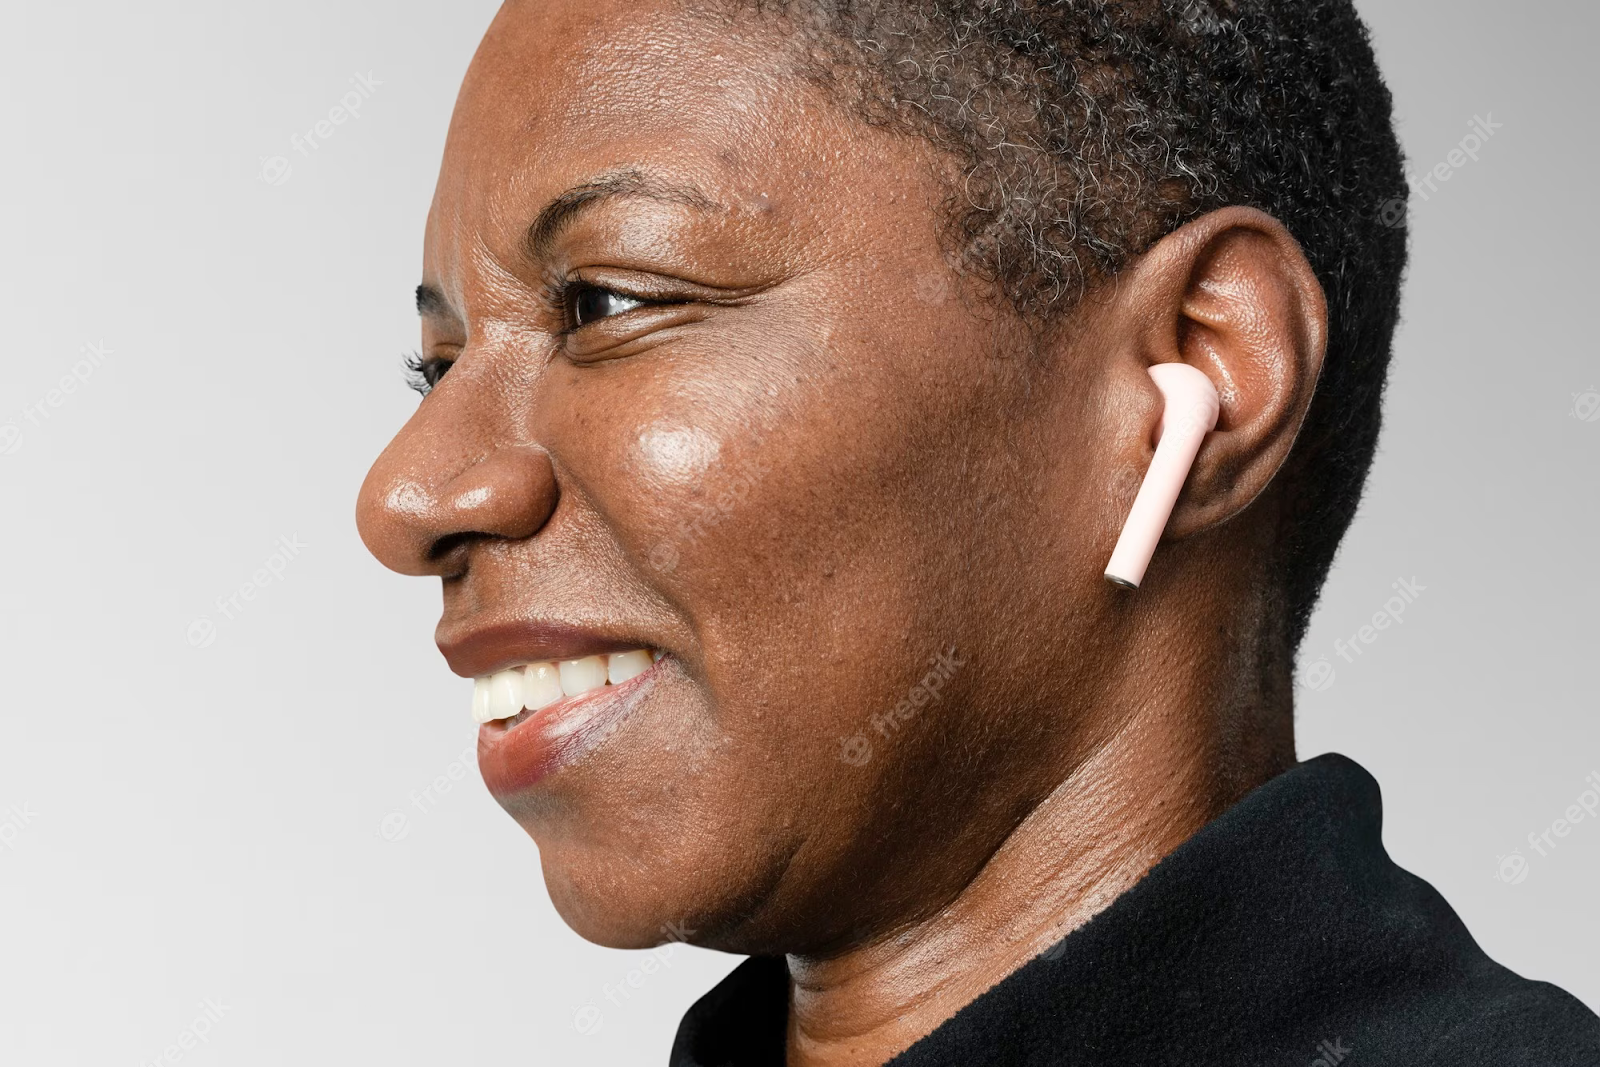 Woman wearing earbuds